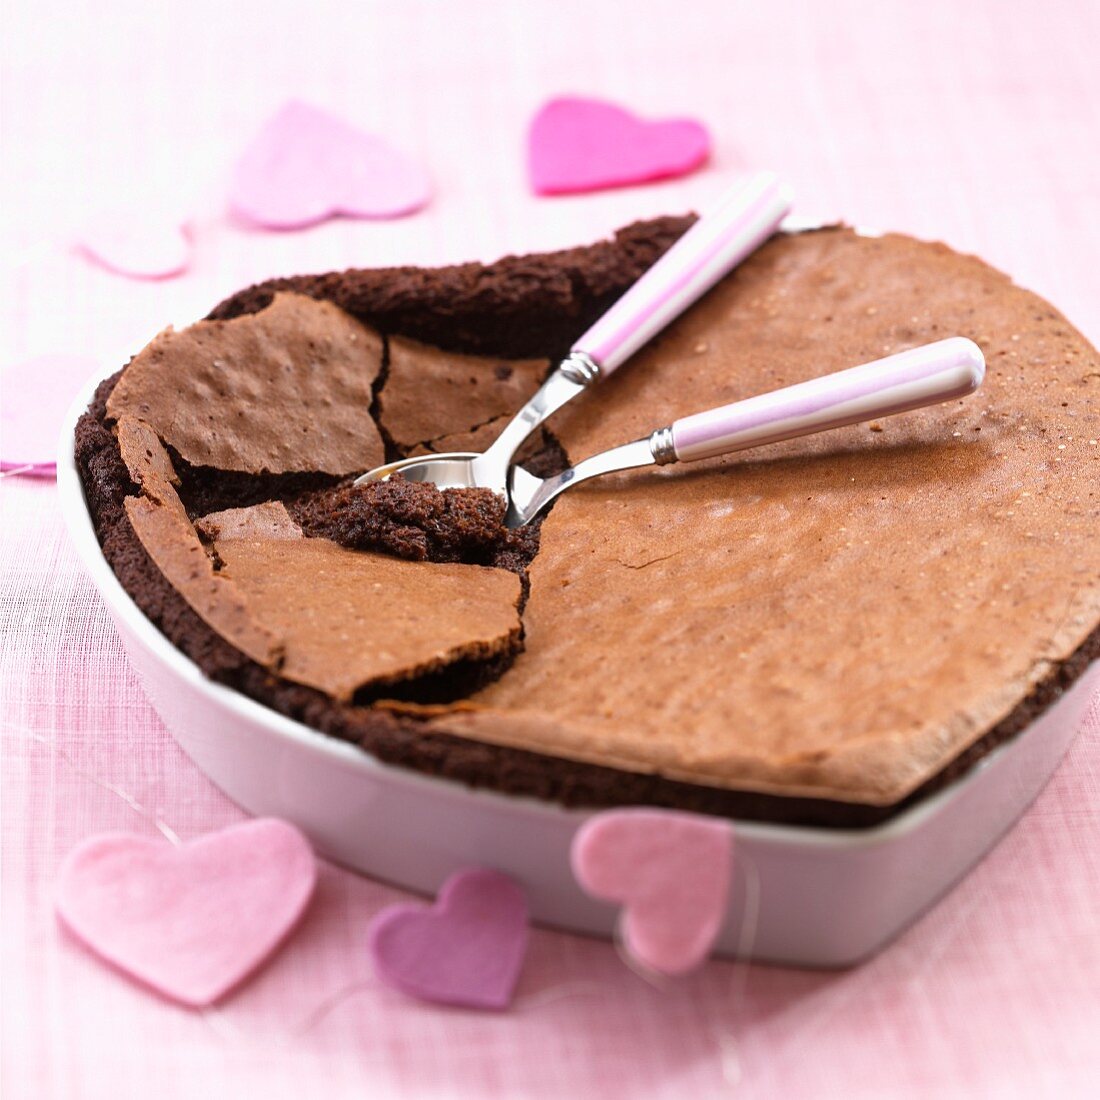 A heart-shaped flourless chocolate cake